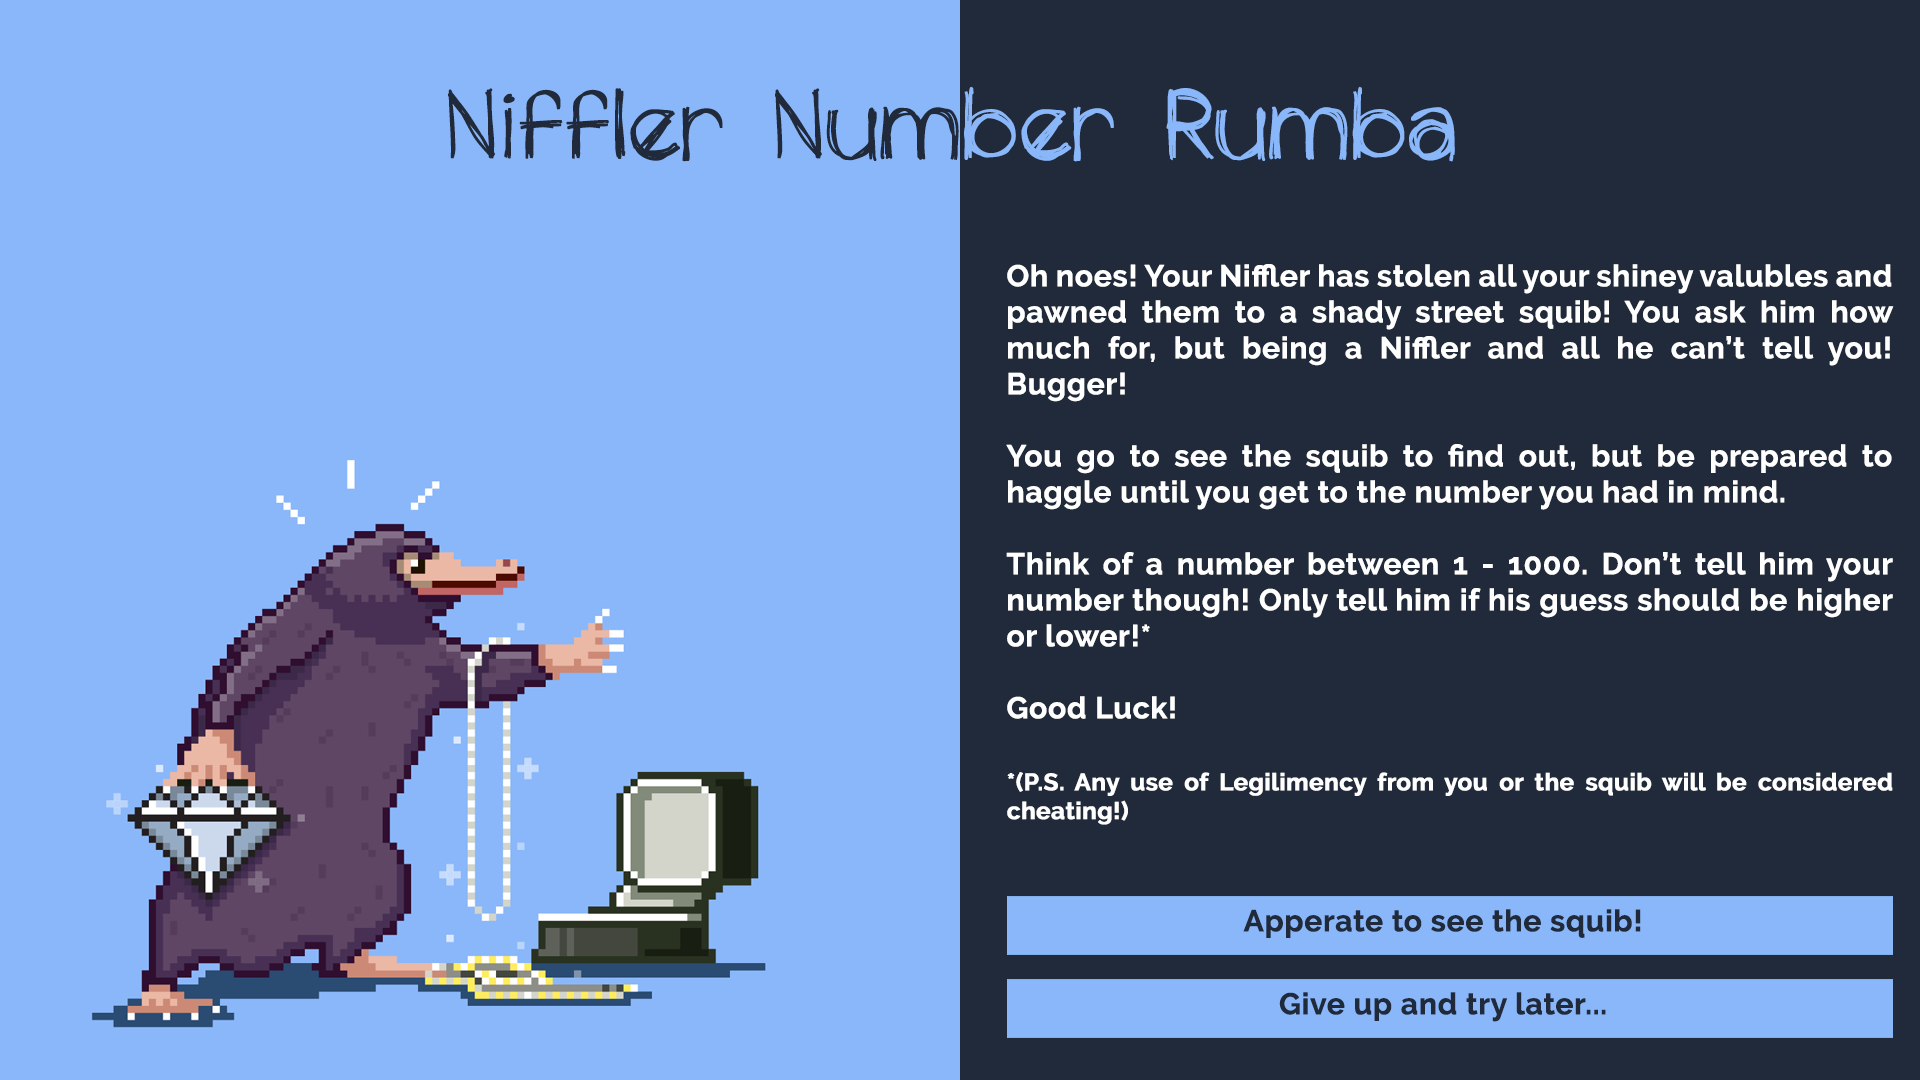 NifflerNumberRumba1